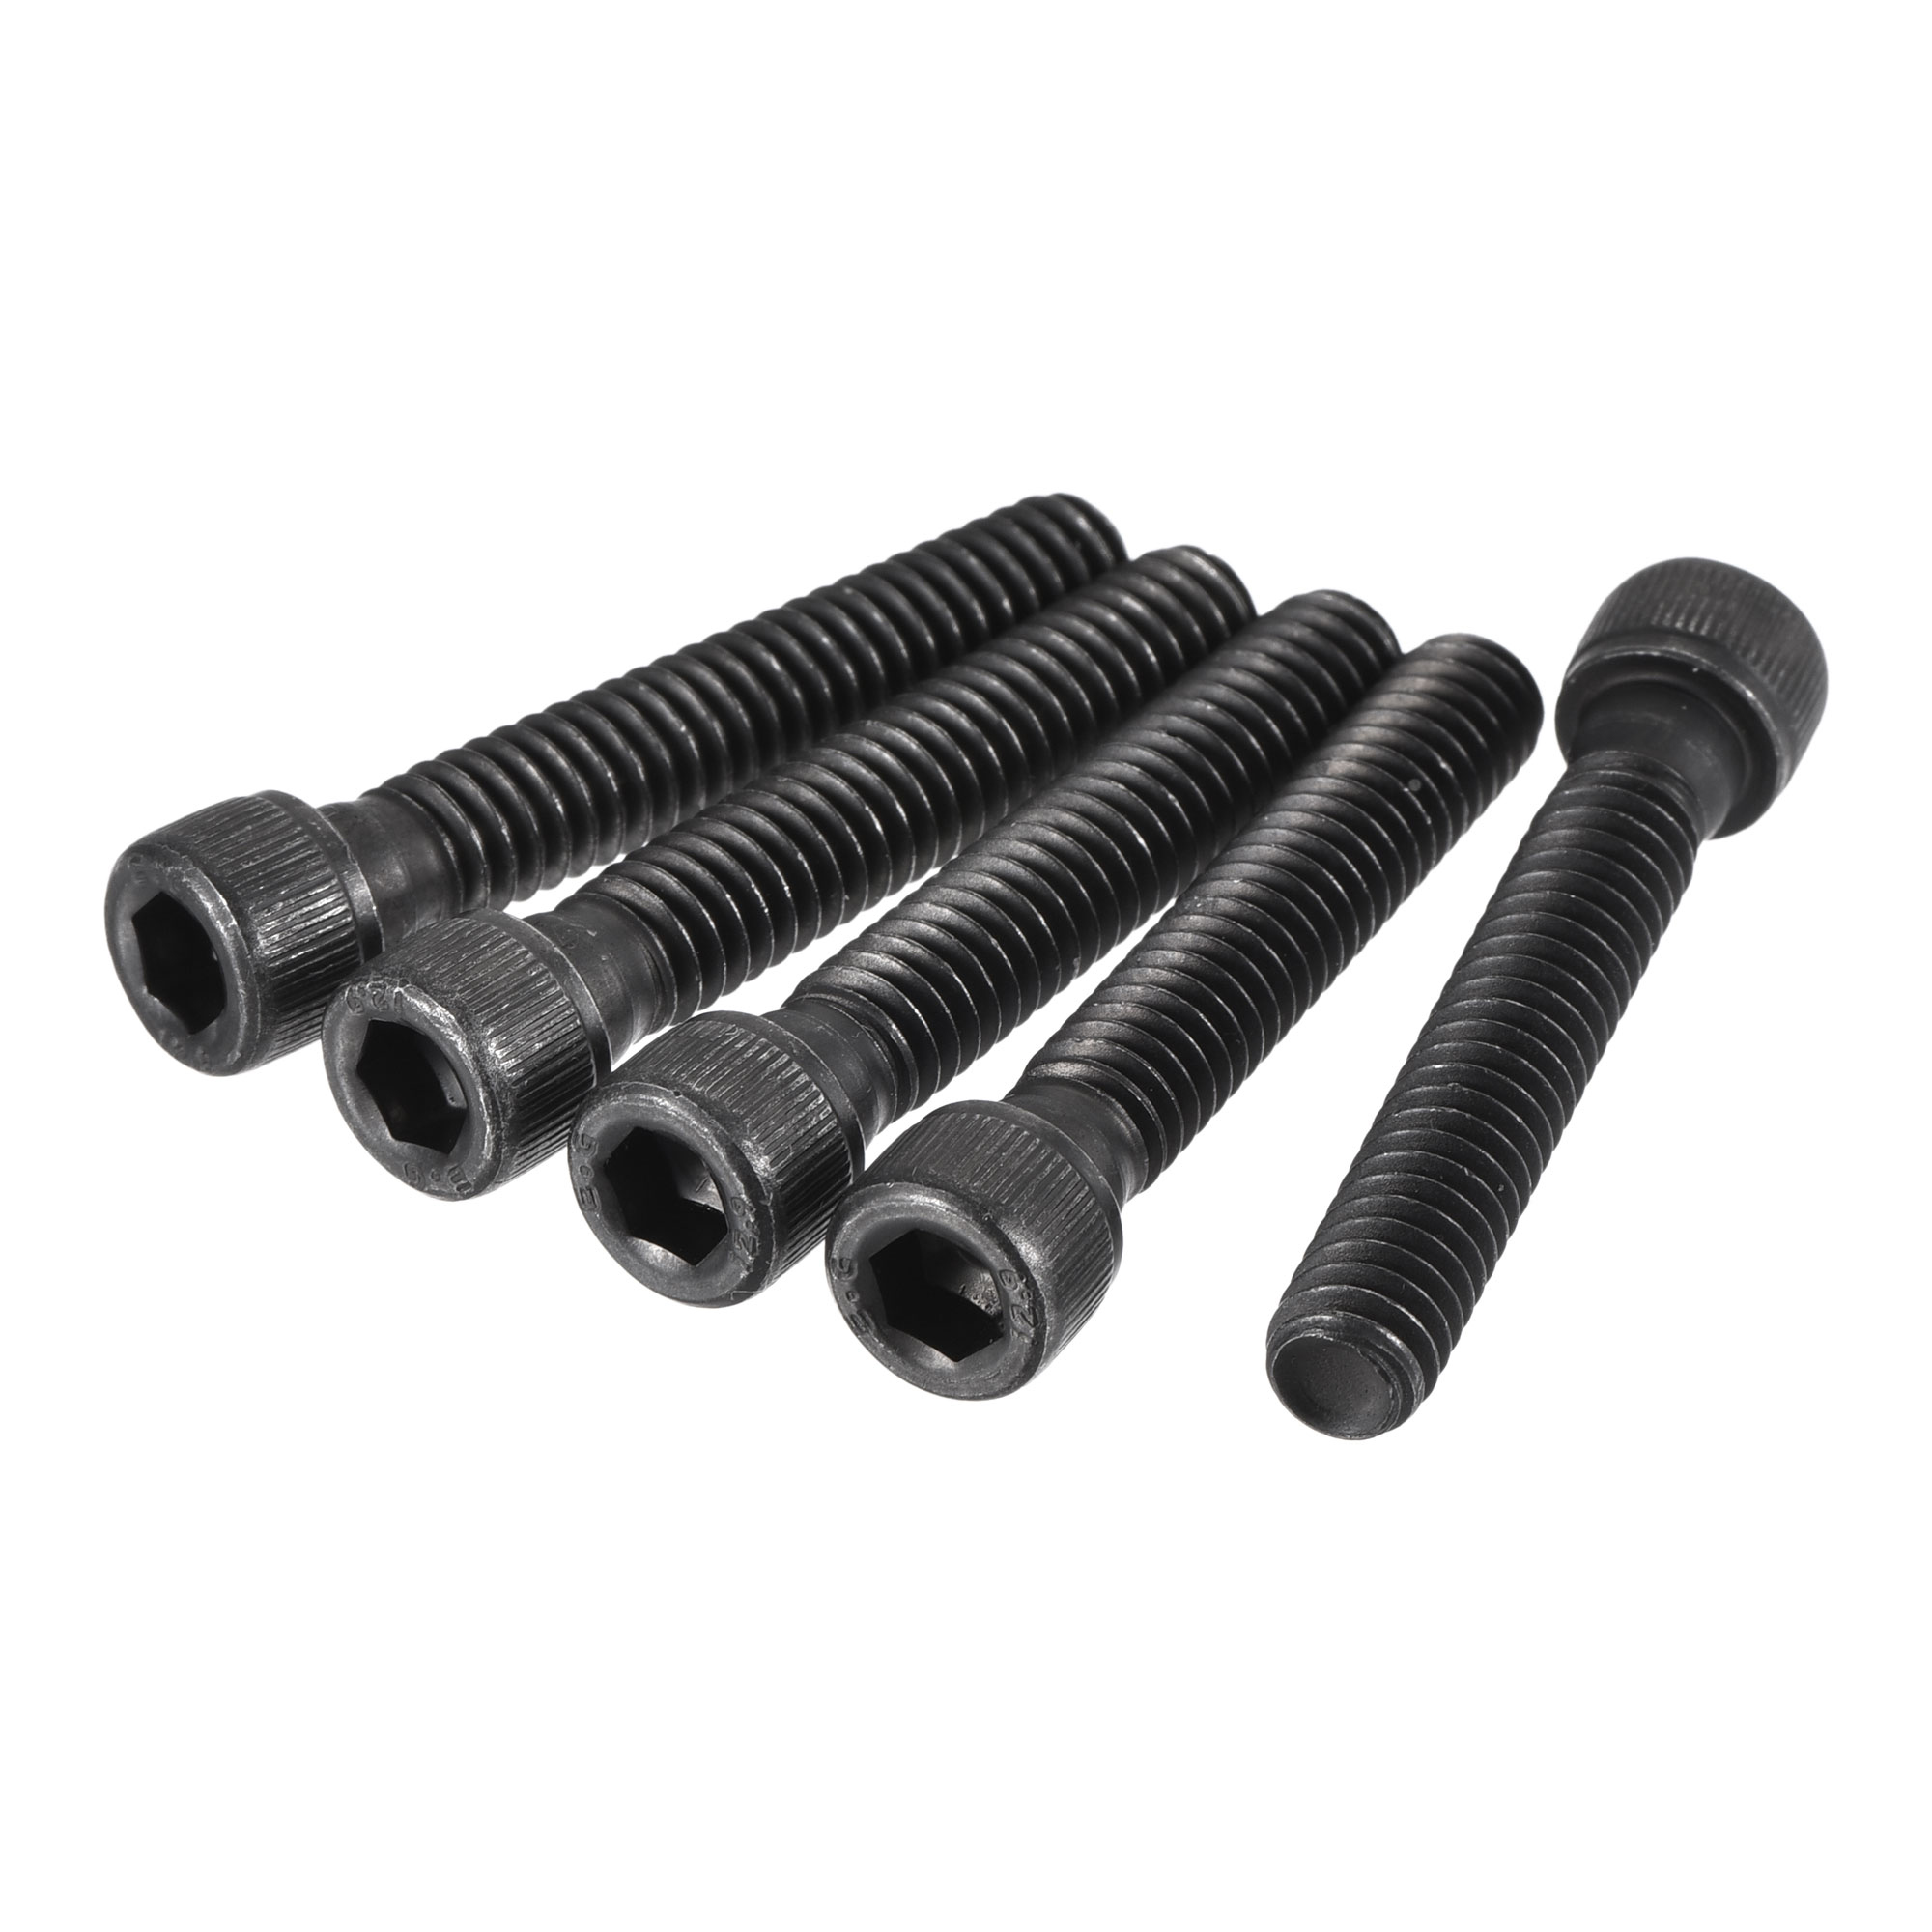 1/4-20x1-1/2" Hex Socket Bolts 12.9 Grade Alloy Steel Black Oxide 25 Pack - image 3 of 5